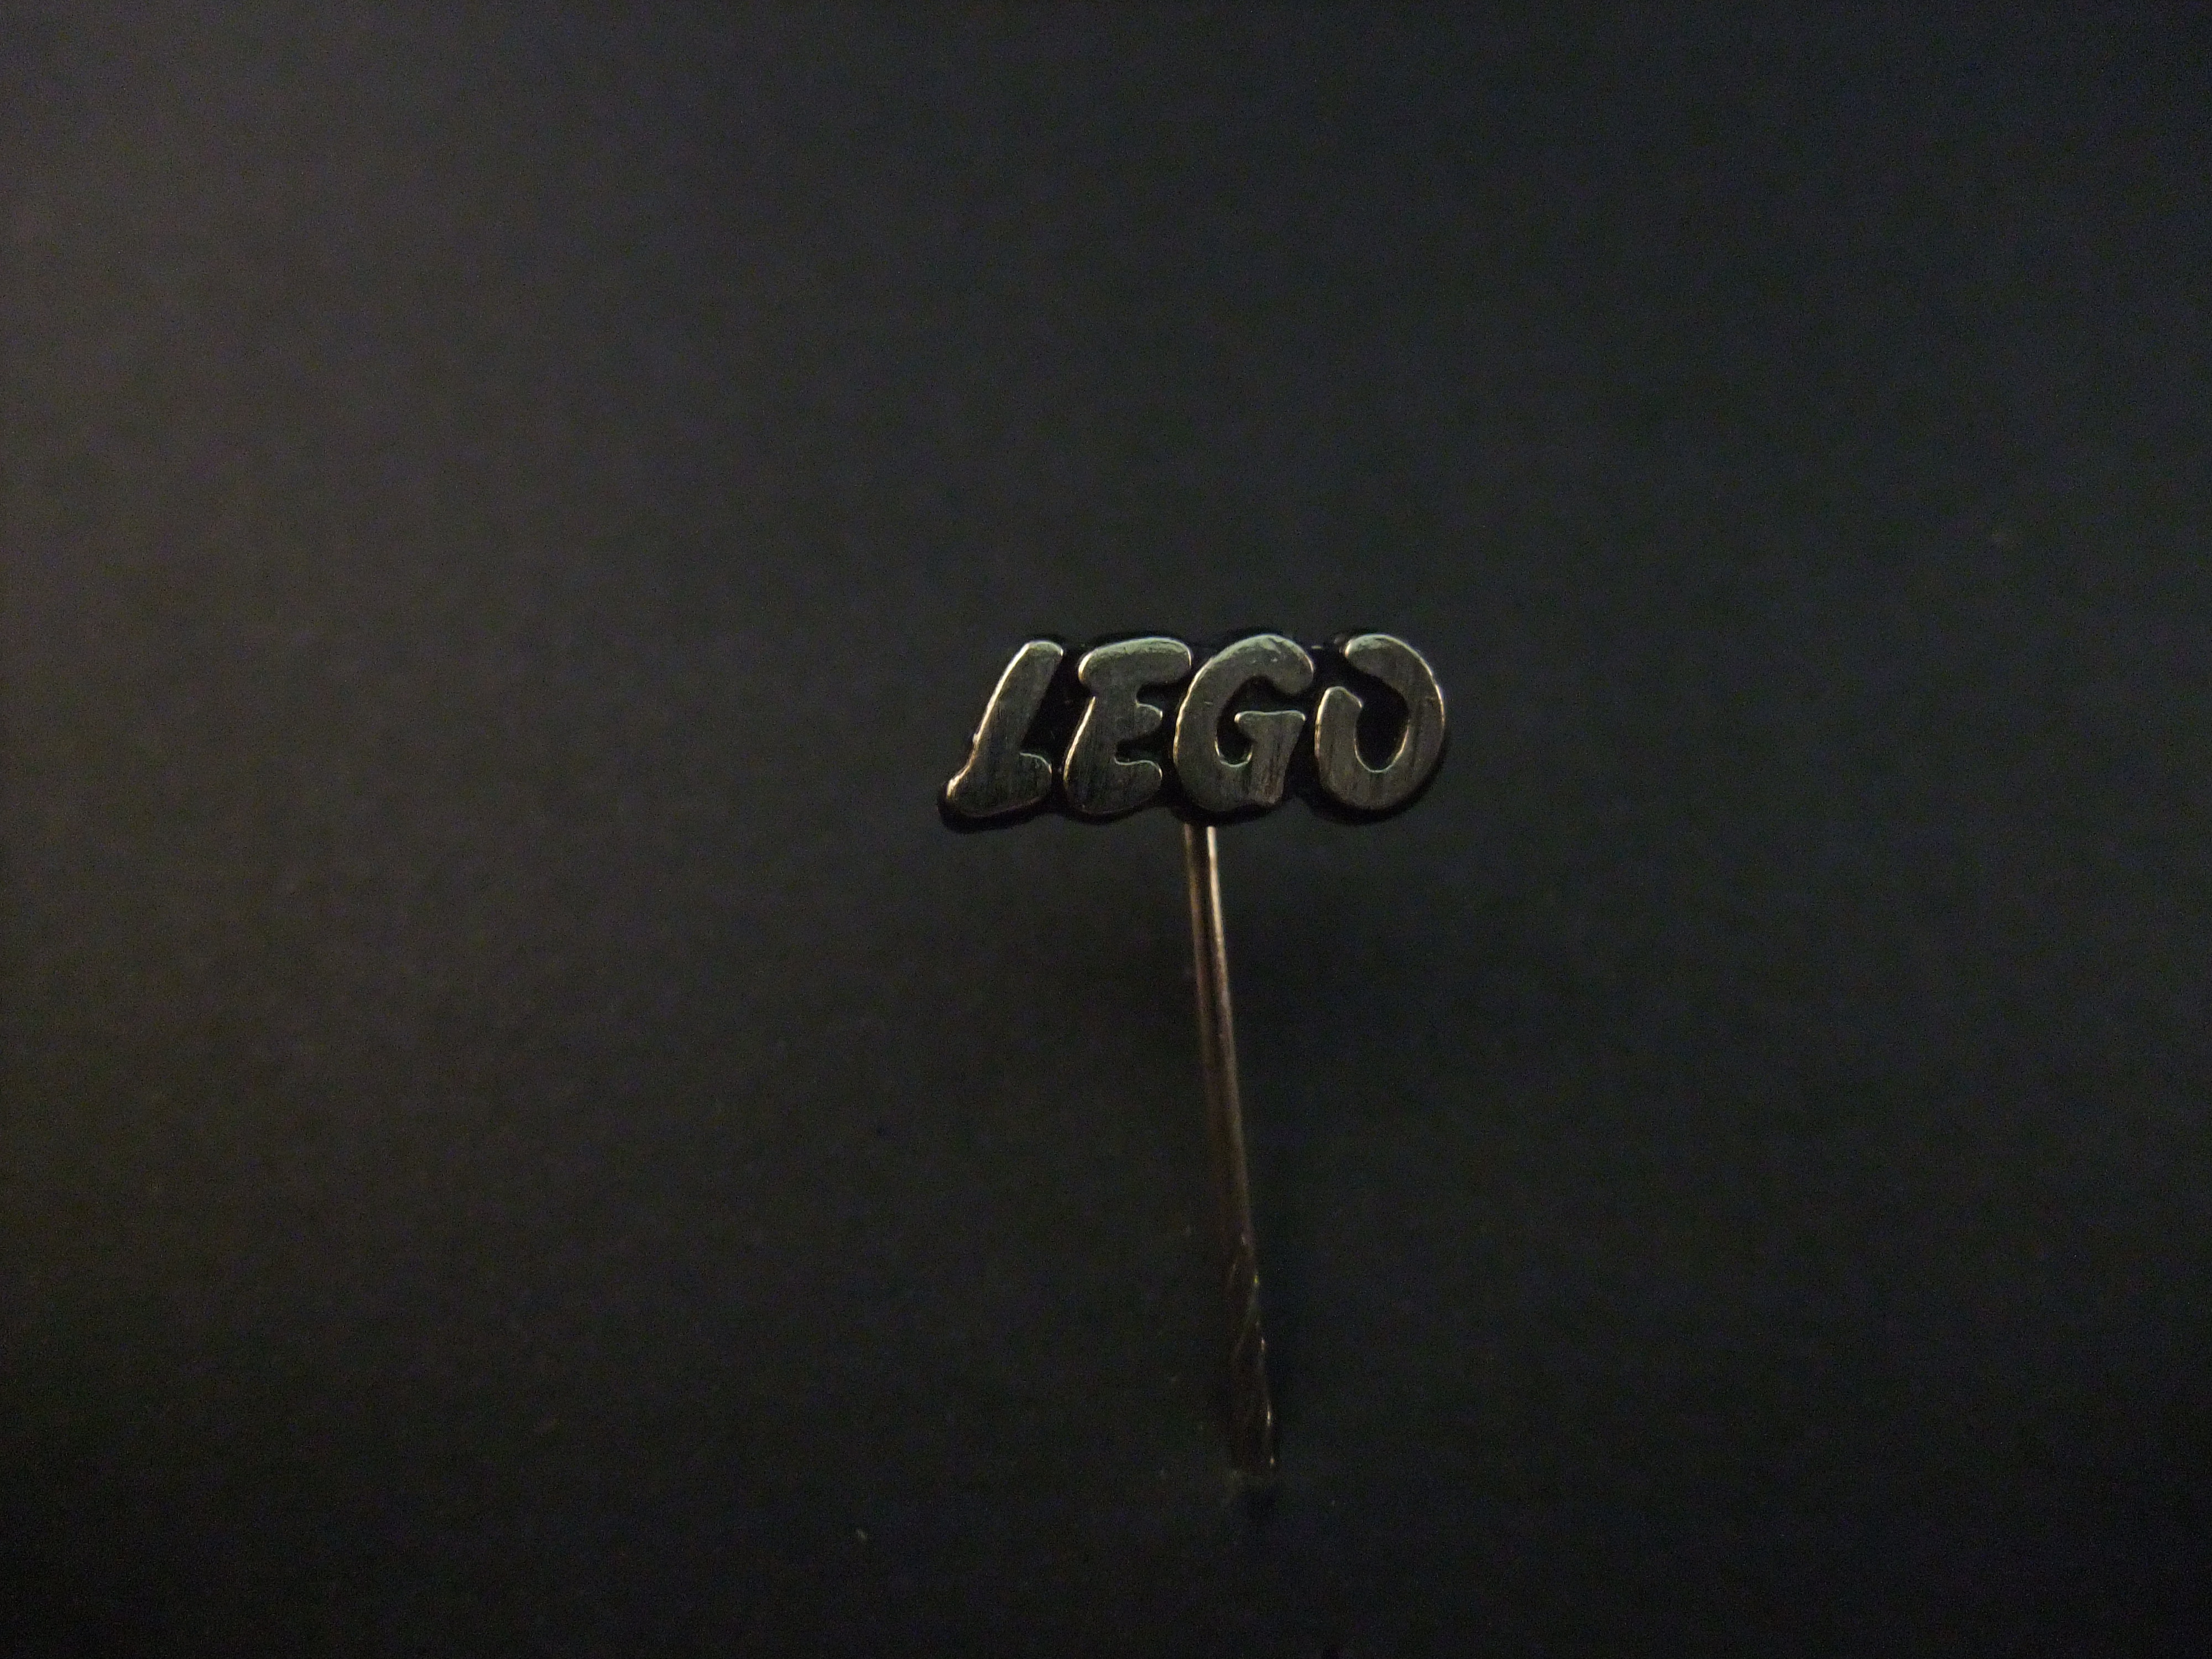 LEGO ( speelgoedbouwsteentjes) logo zilverlkleurig